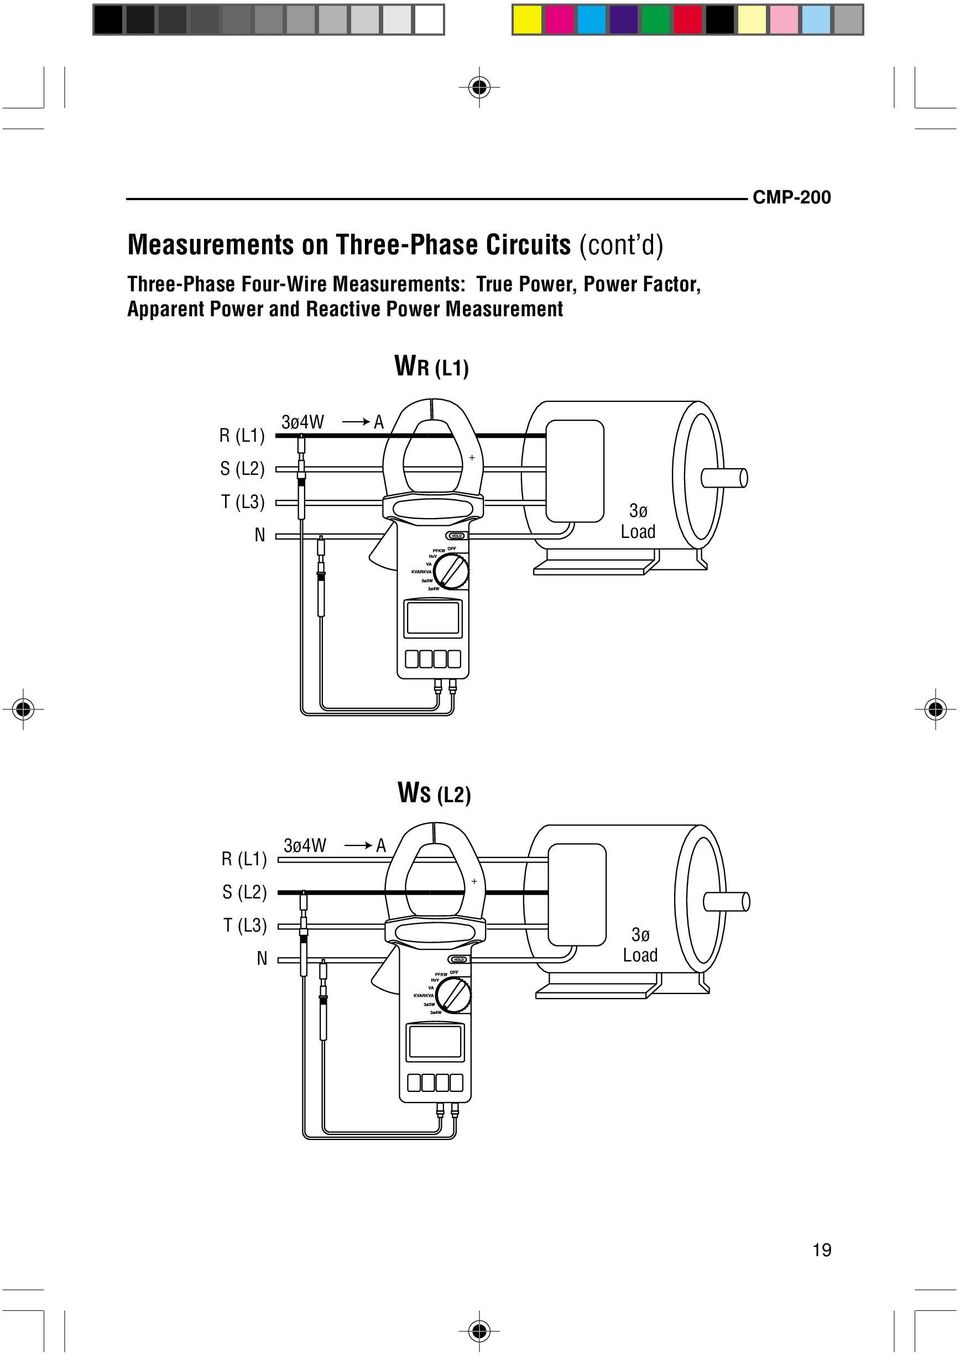 Apparent Power and Reactive Power Measurement WR (L1) R (L1) S